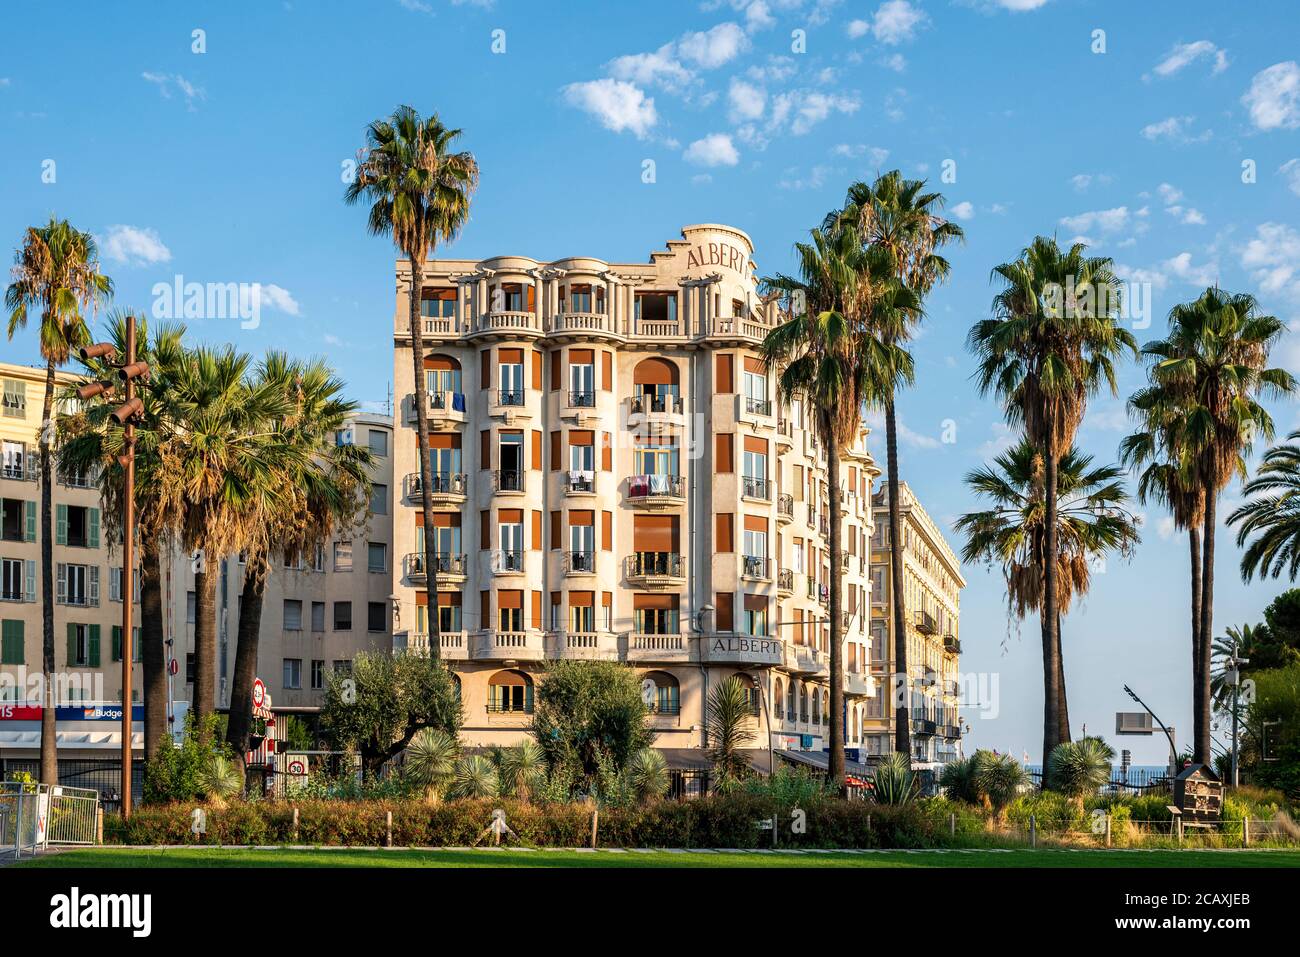 Vista generale dell'hotel Albert 1er dal giardino pubblico Albert 1er di Nizza, Francia. E' un hotel a 3 stelle vicino al mare. Foto Stock